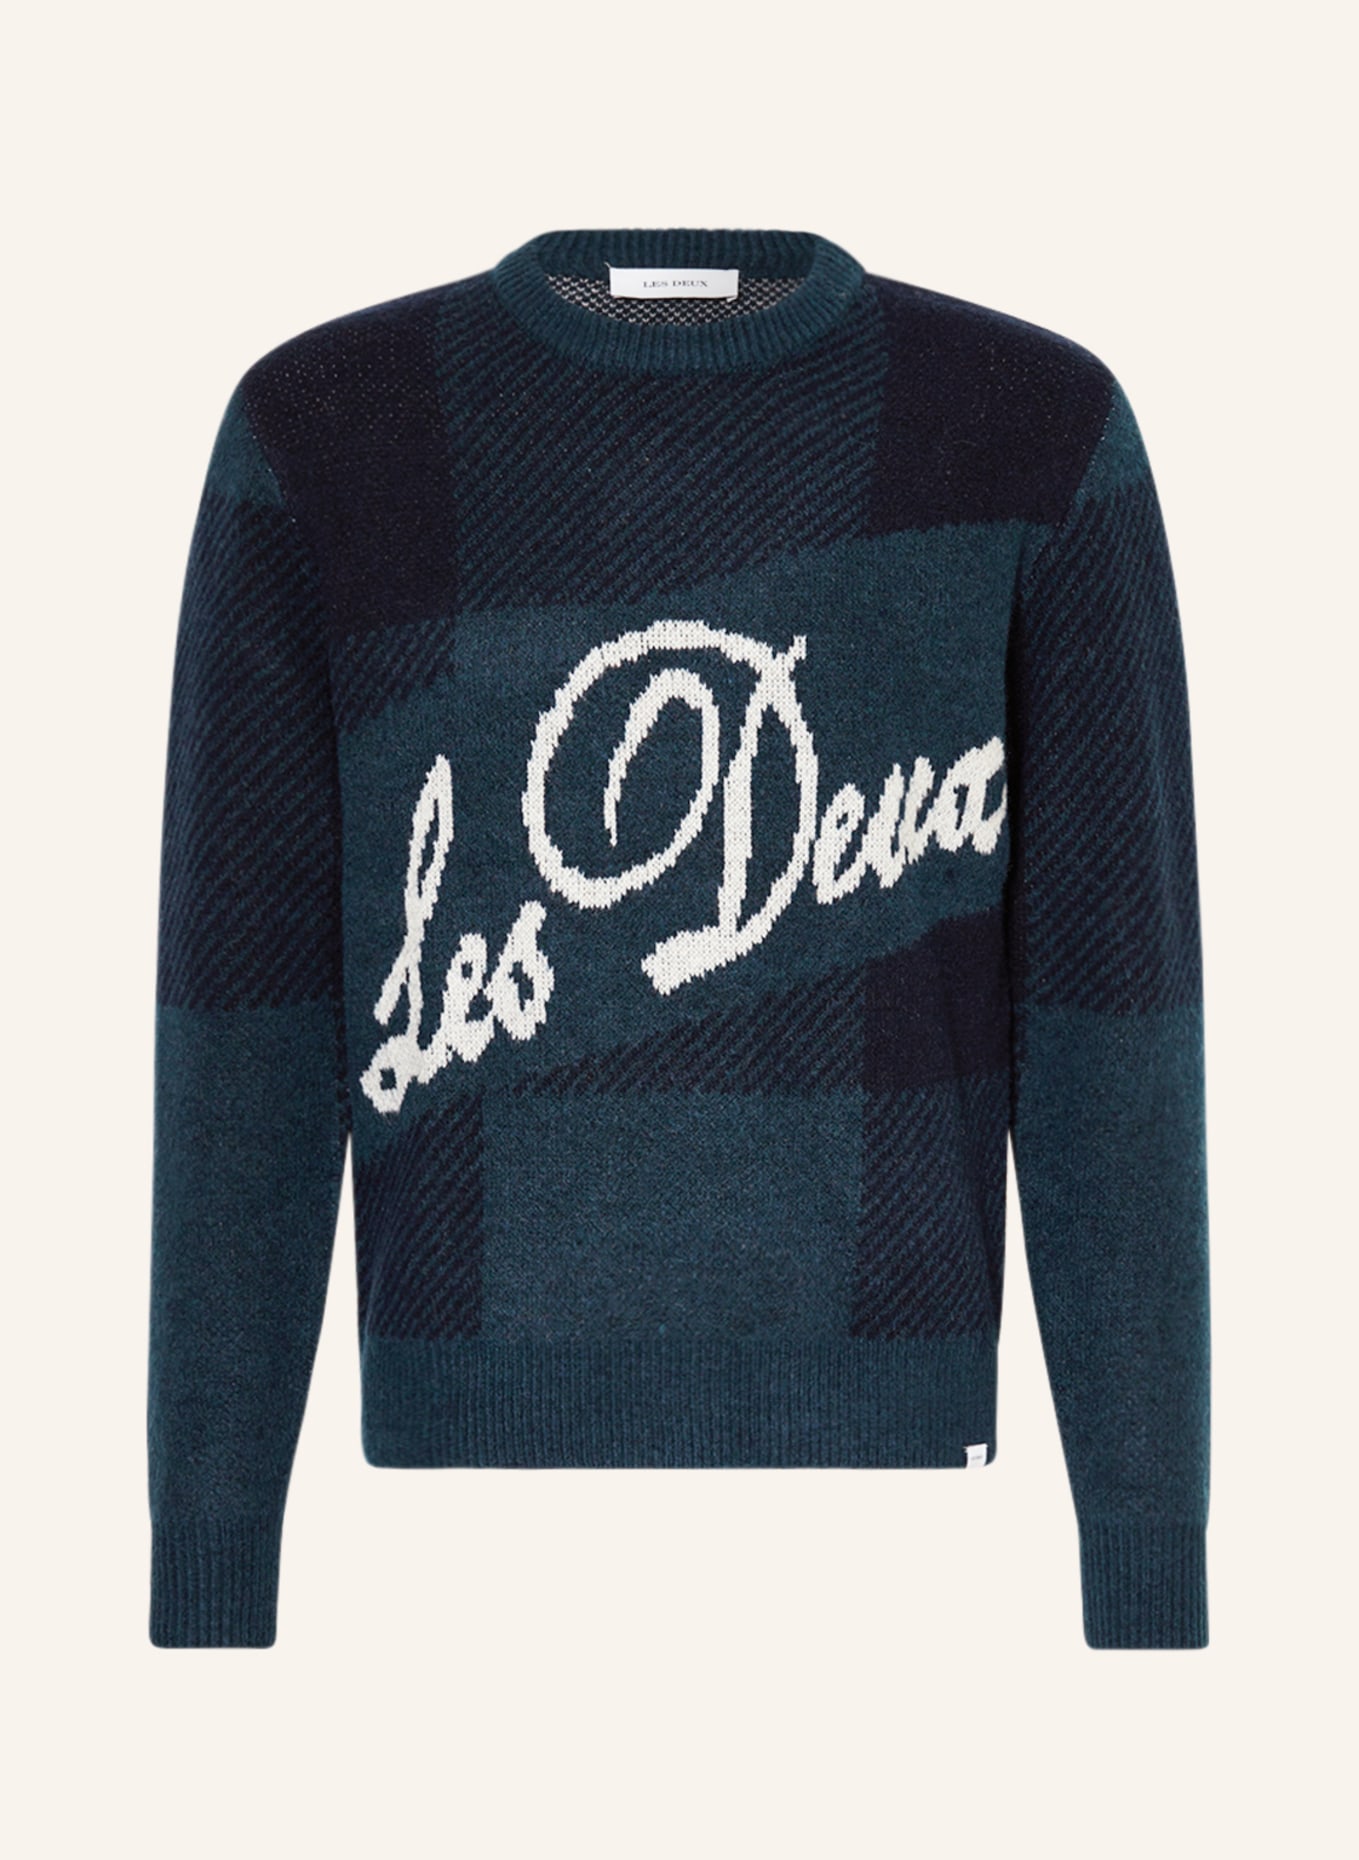 LES DEUX Pullover, Farbe: BLAU/ DUNKELBLAU/ WEISS (Bild 1)